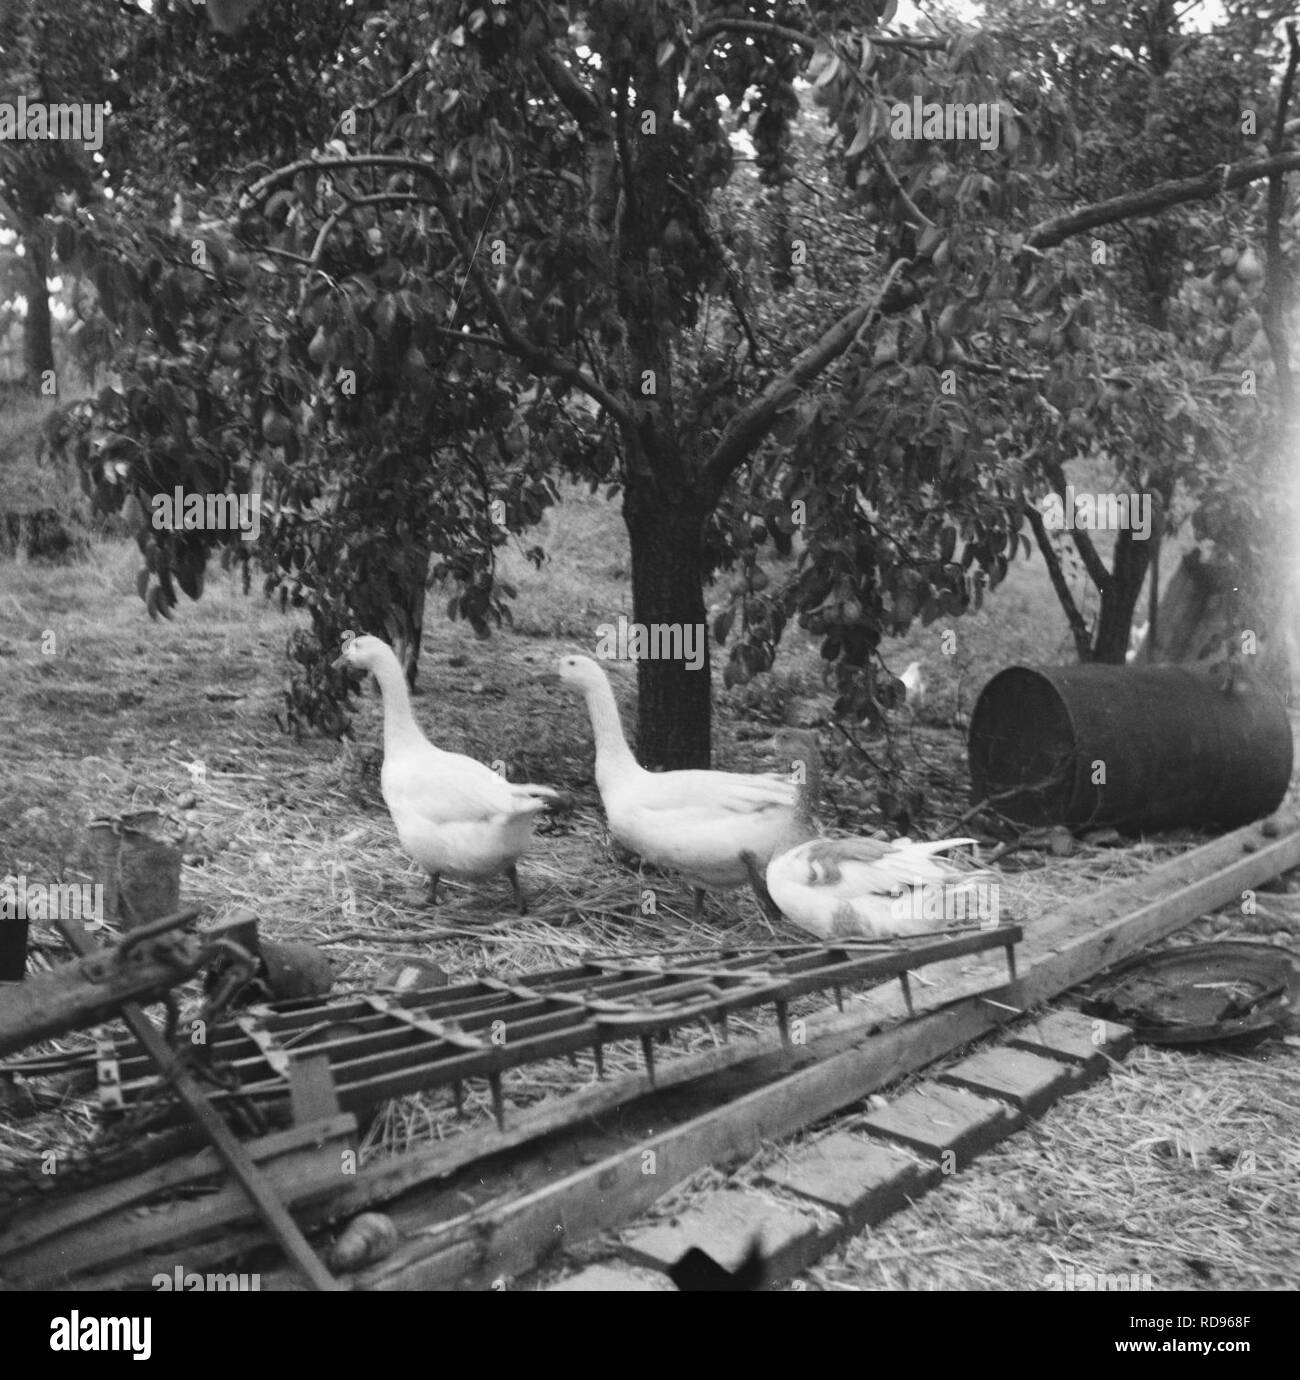 Annexatie Doorkijk naar erf boerderij met rondscharrelende ganzen en kippen, Bestanddeelnr 900-6304. Stock Photo